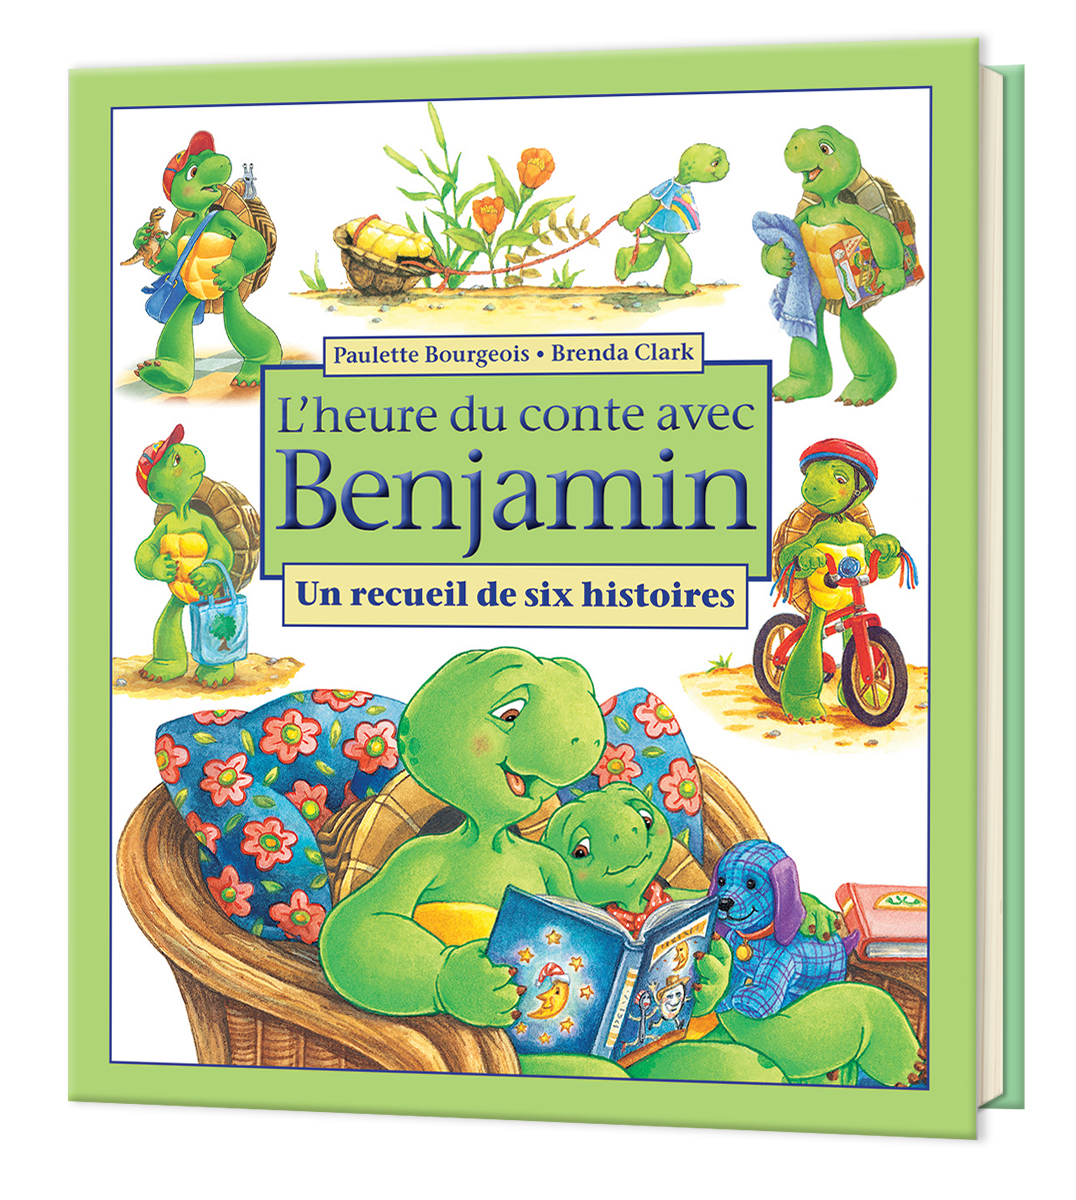  L'heure du conte avec Benjamin : Un recueil de six histoires 